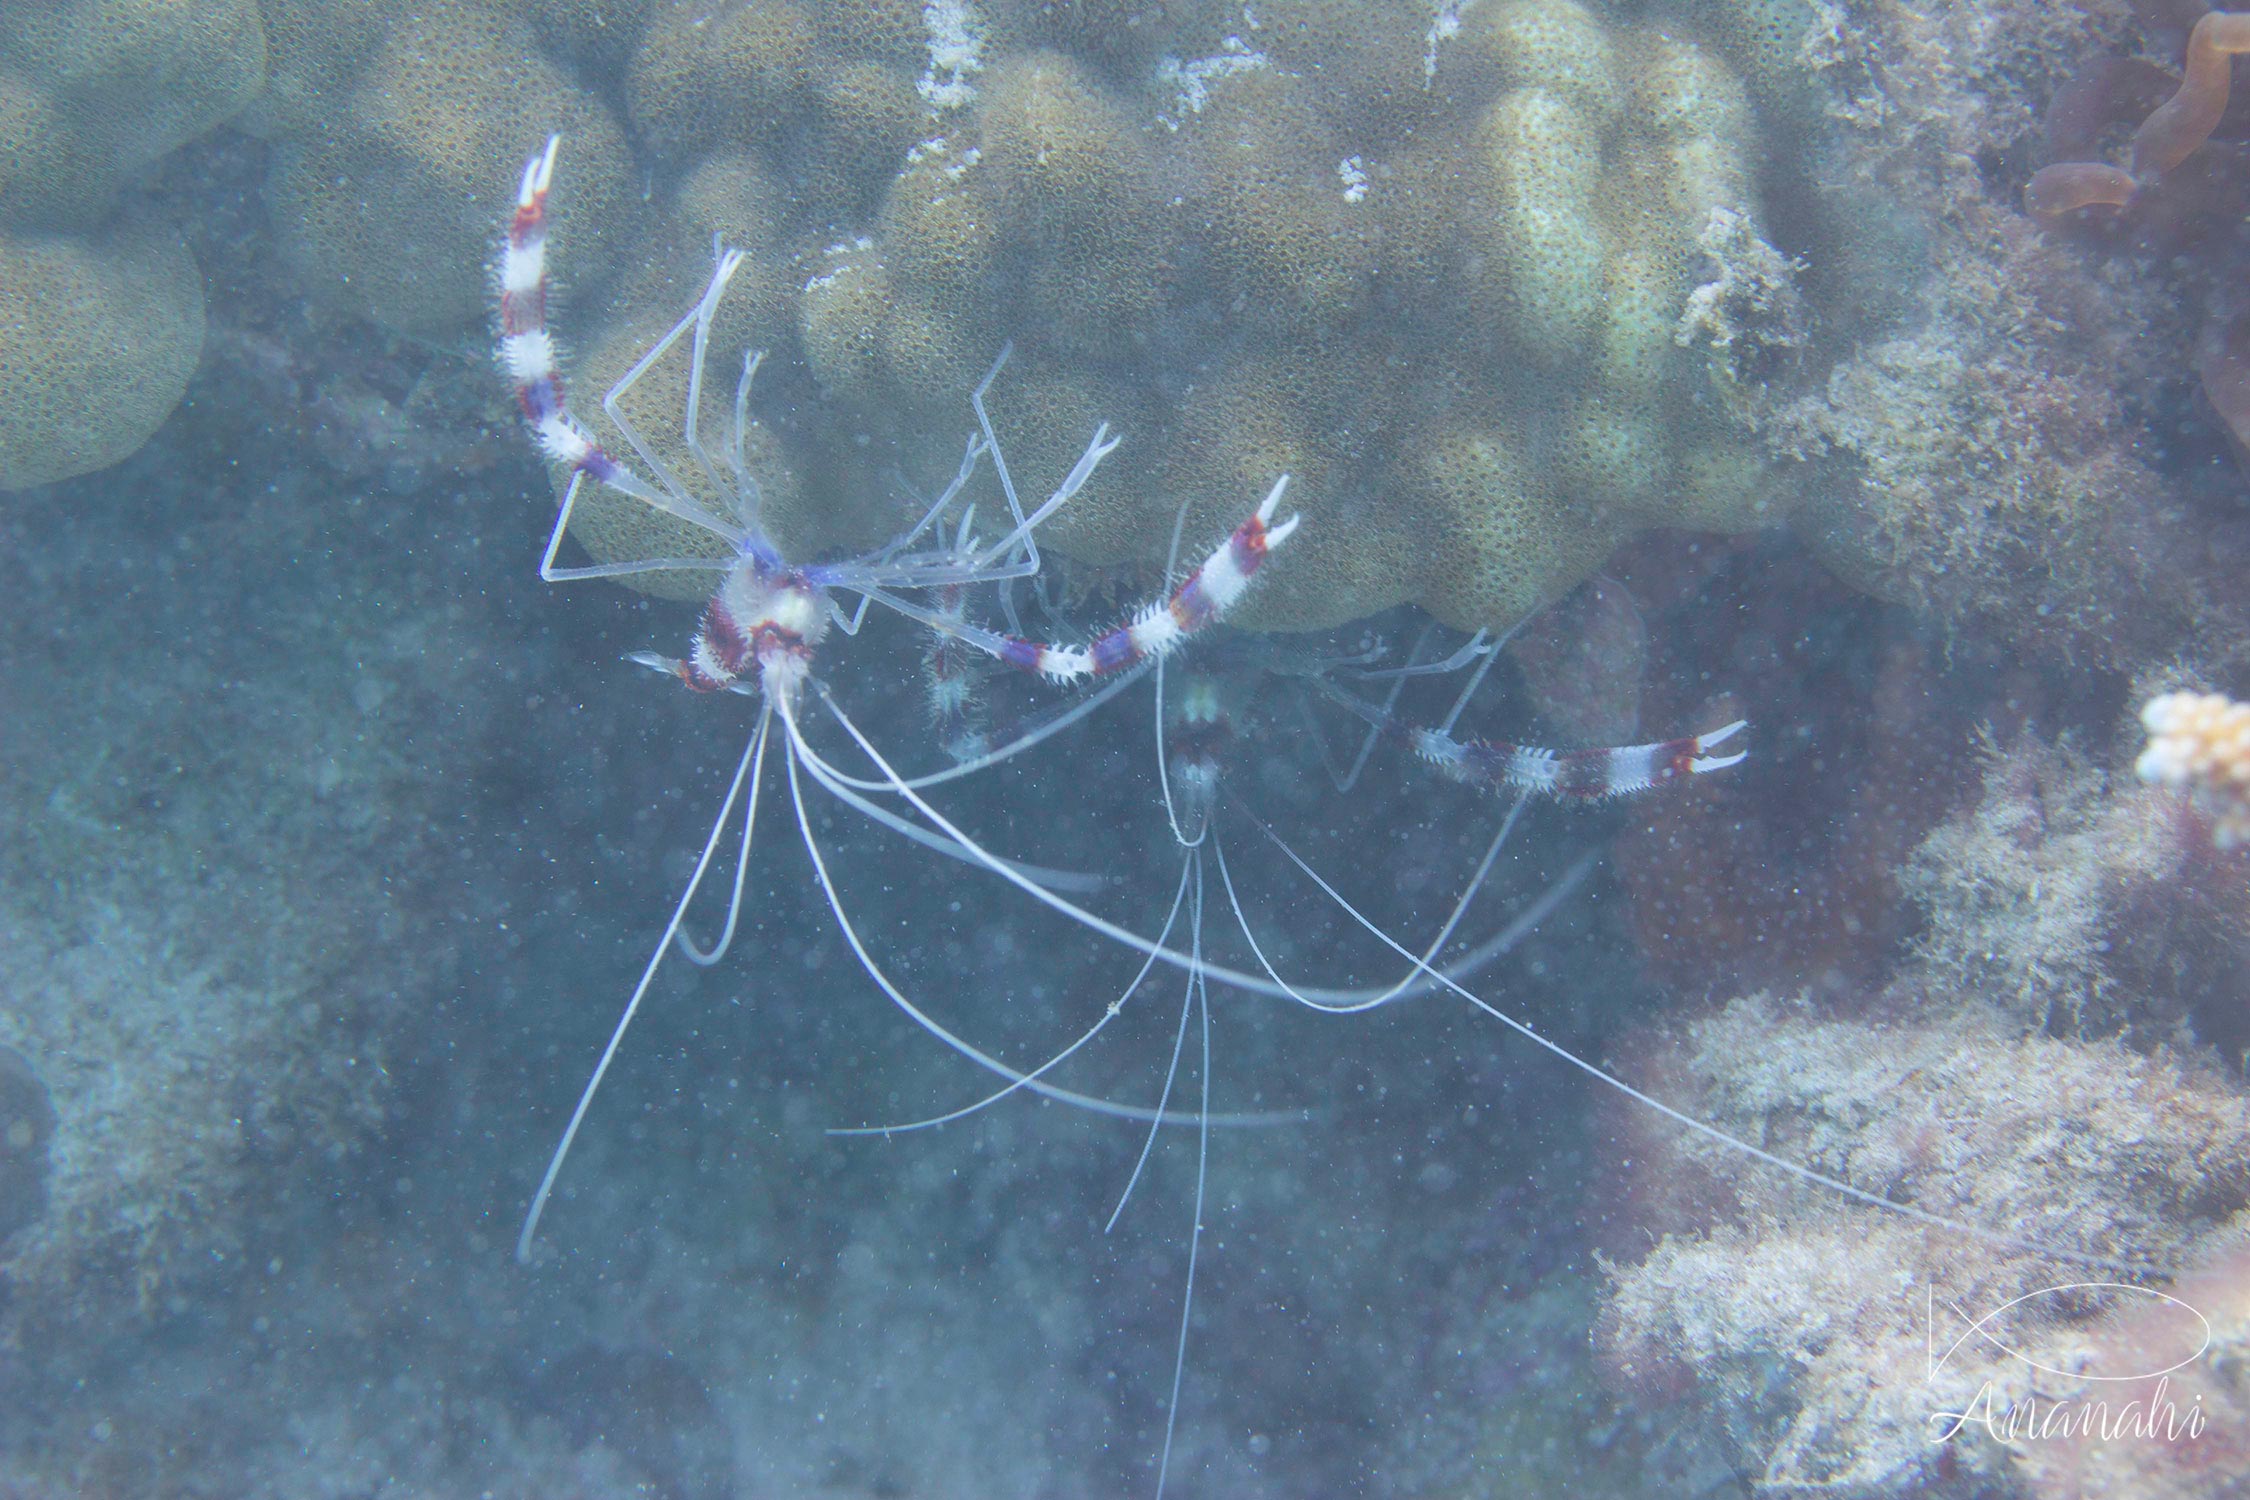 Banded cleaner shrimp of Mayotte